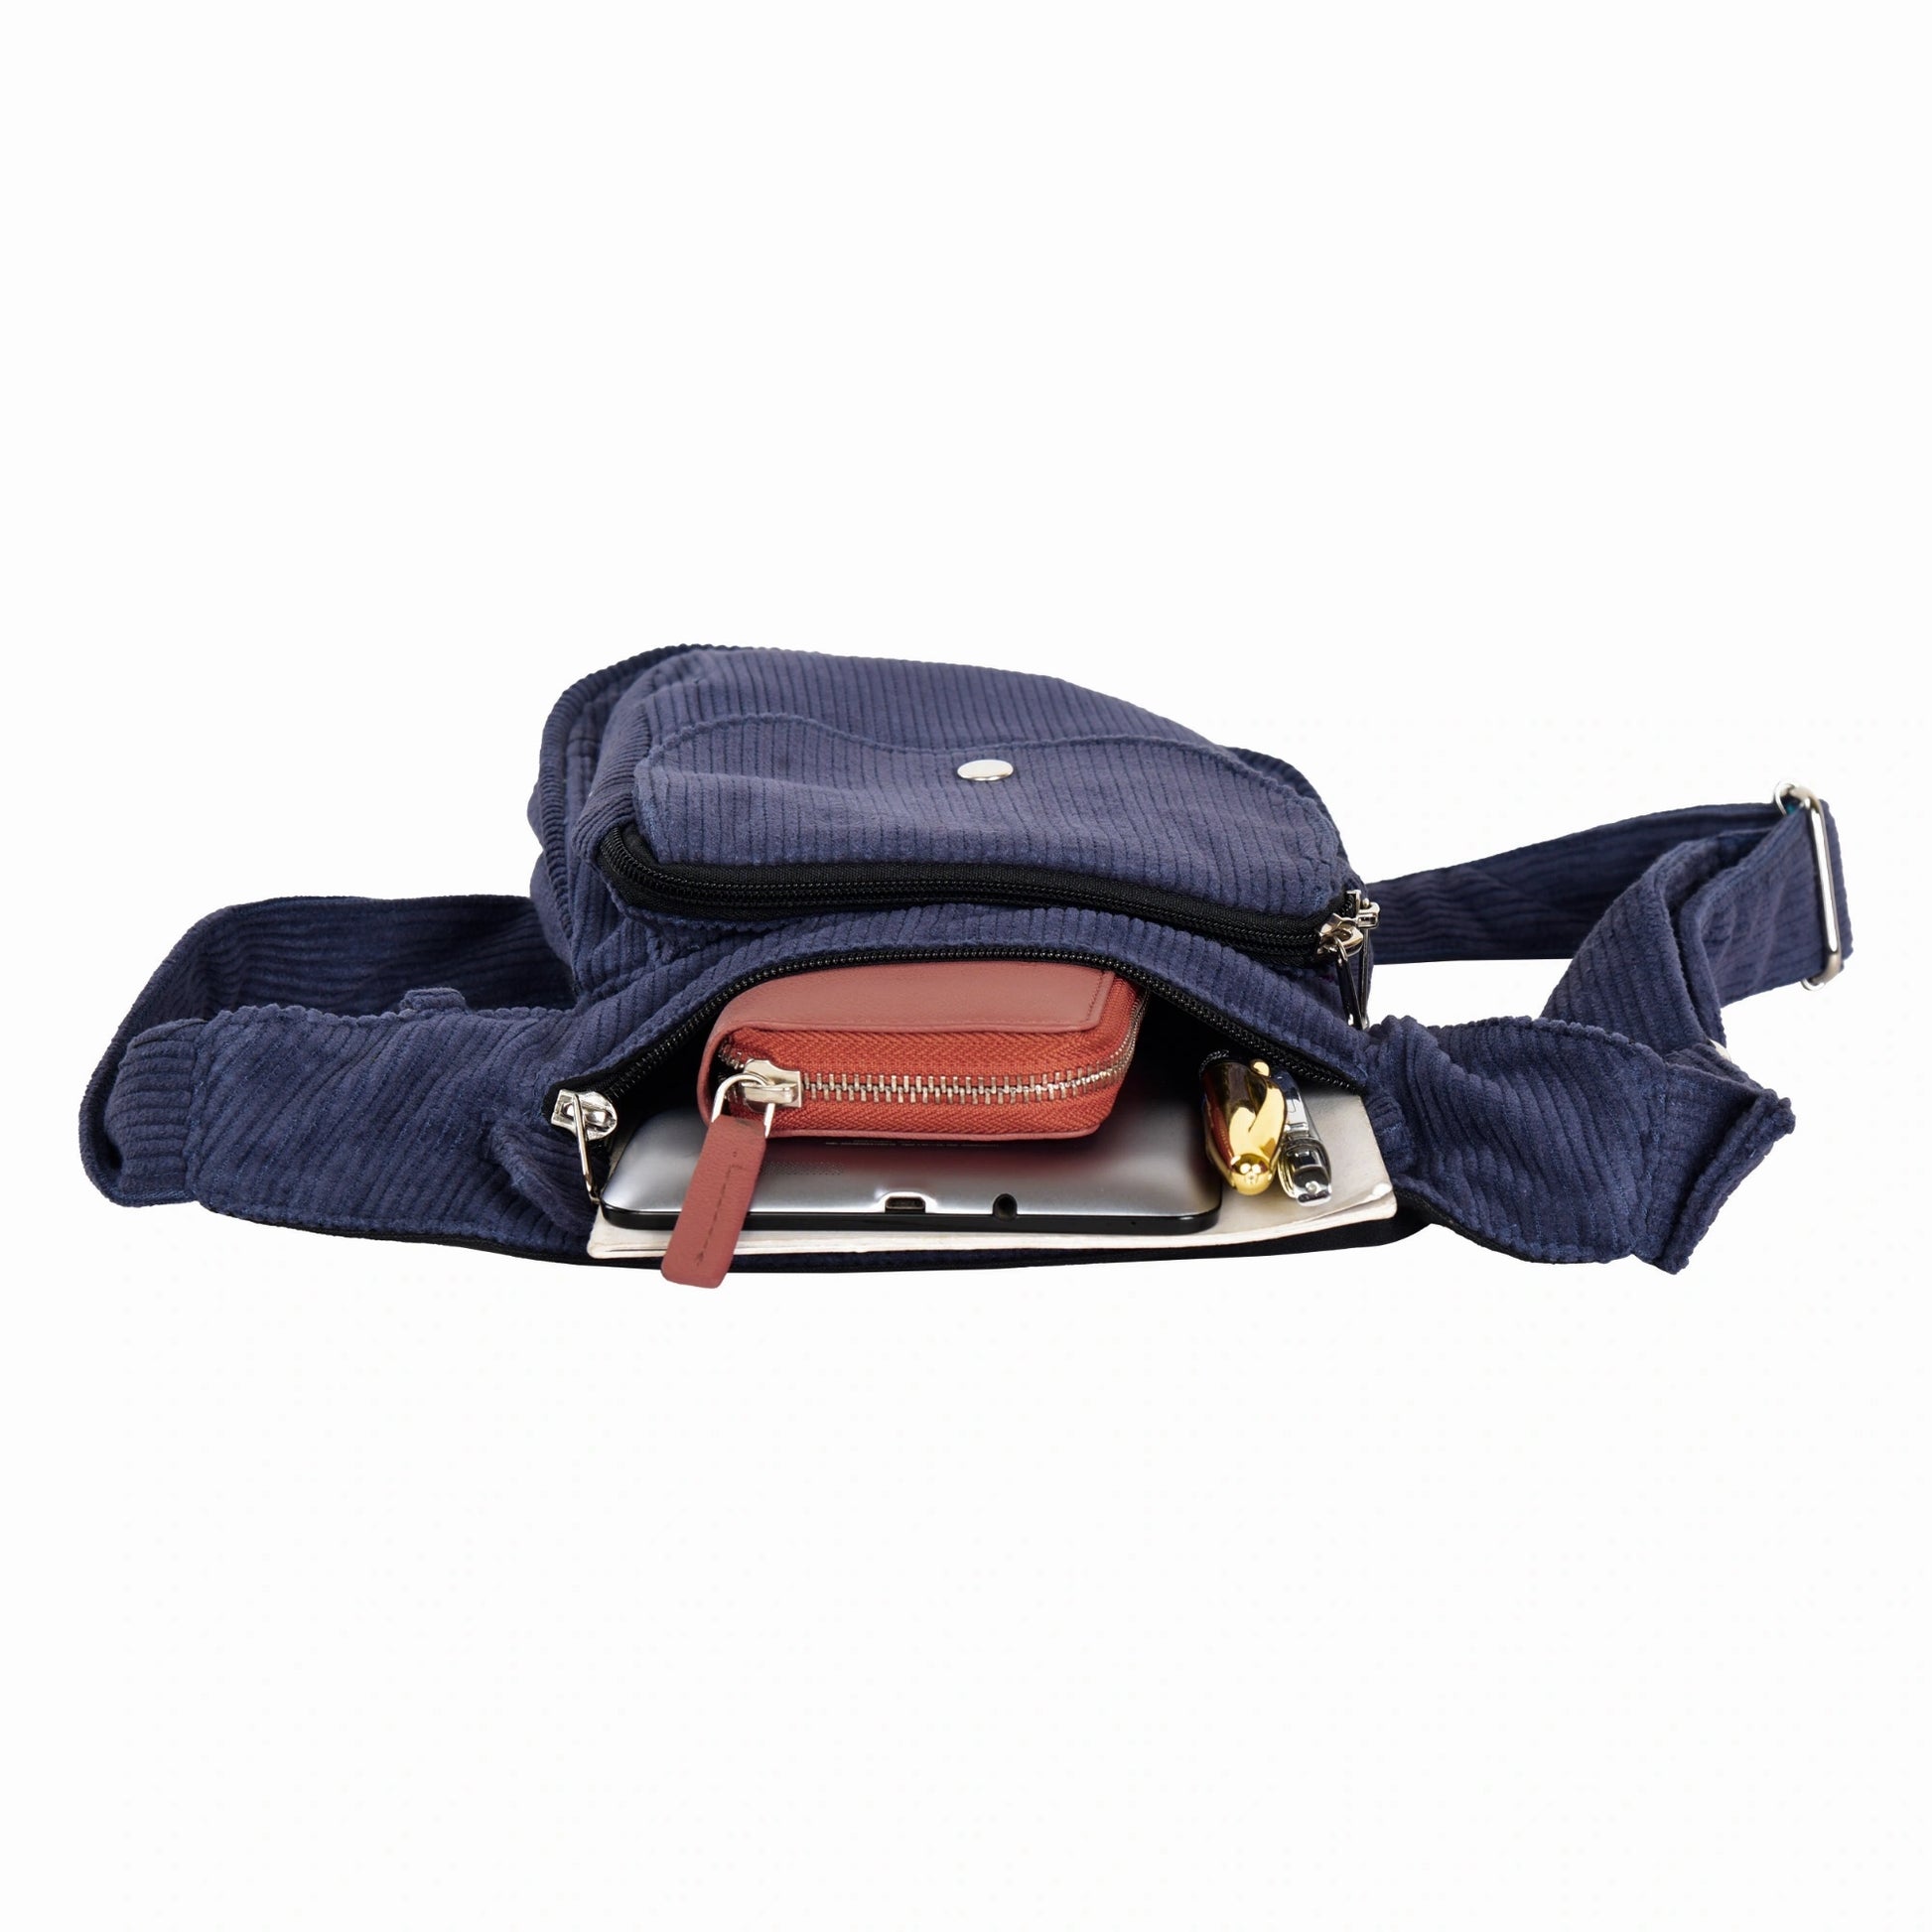 Gürteltasche, Gassi-Tasche aus Cord Marineblau. Das Hauptfach und vordere Reißverschlussfach bietet Platz für Handy, Portemonnaie und andere Kleinigkeiten.